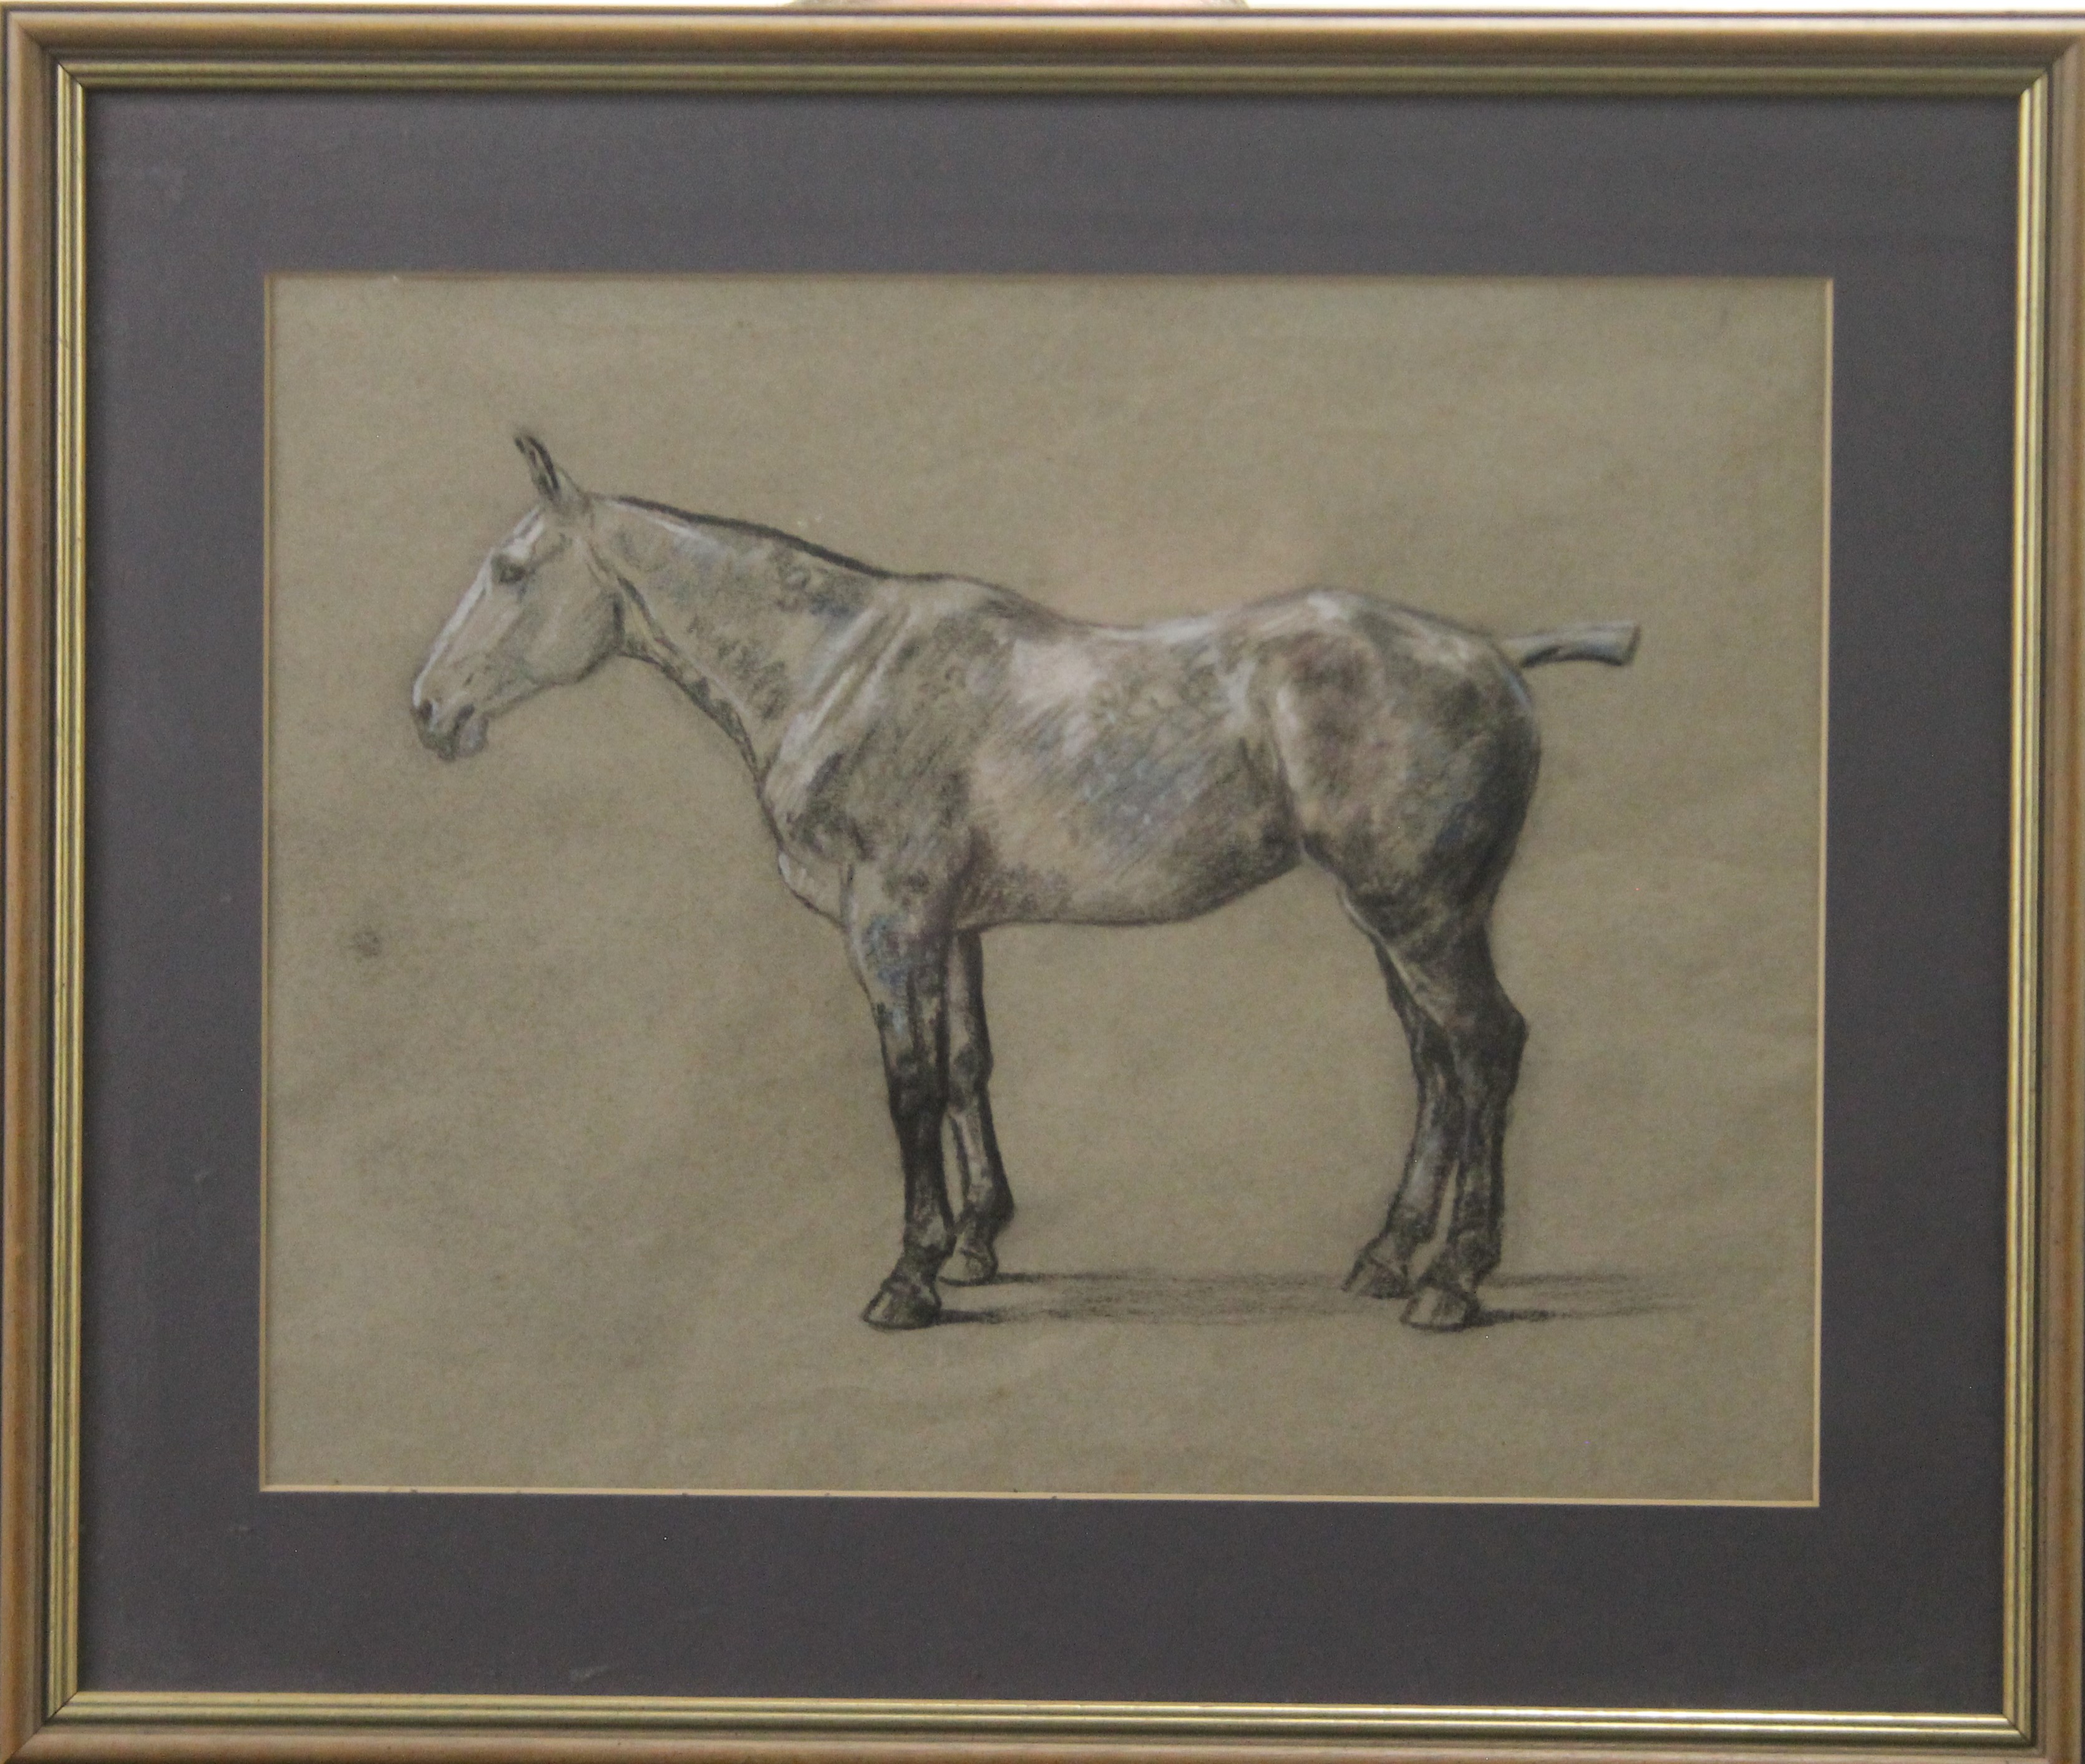 BIEGEL, PETER (1913-1989) British (AR), Horse, pastel, framed and glazed. 29 x 37 cm. - Image 2 of 2